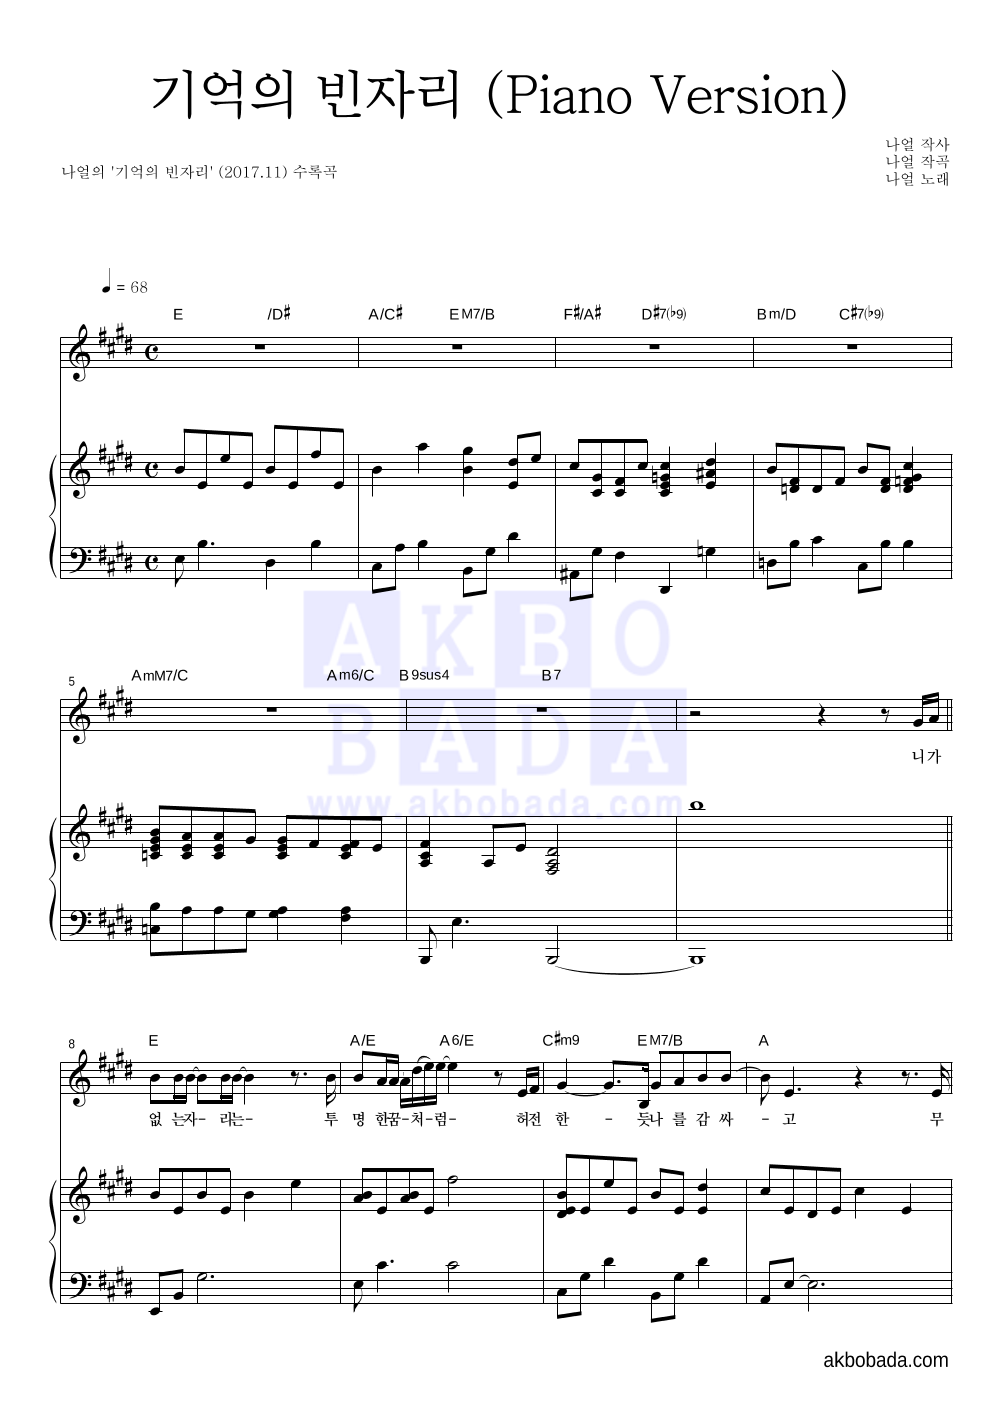 나얼 - 기억의 빈자리 (Piano Version) 피아노 3단 악보 